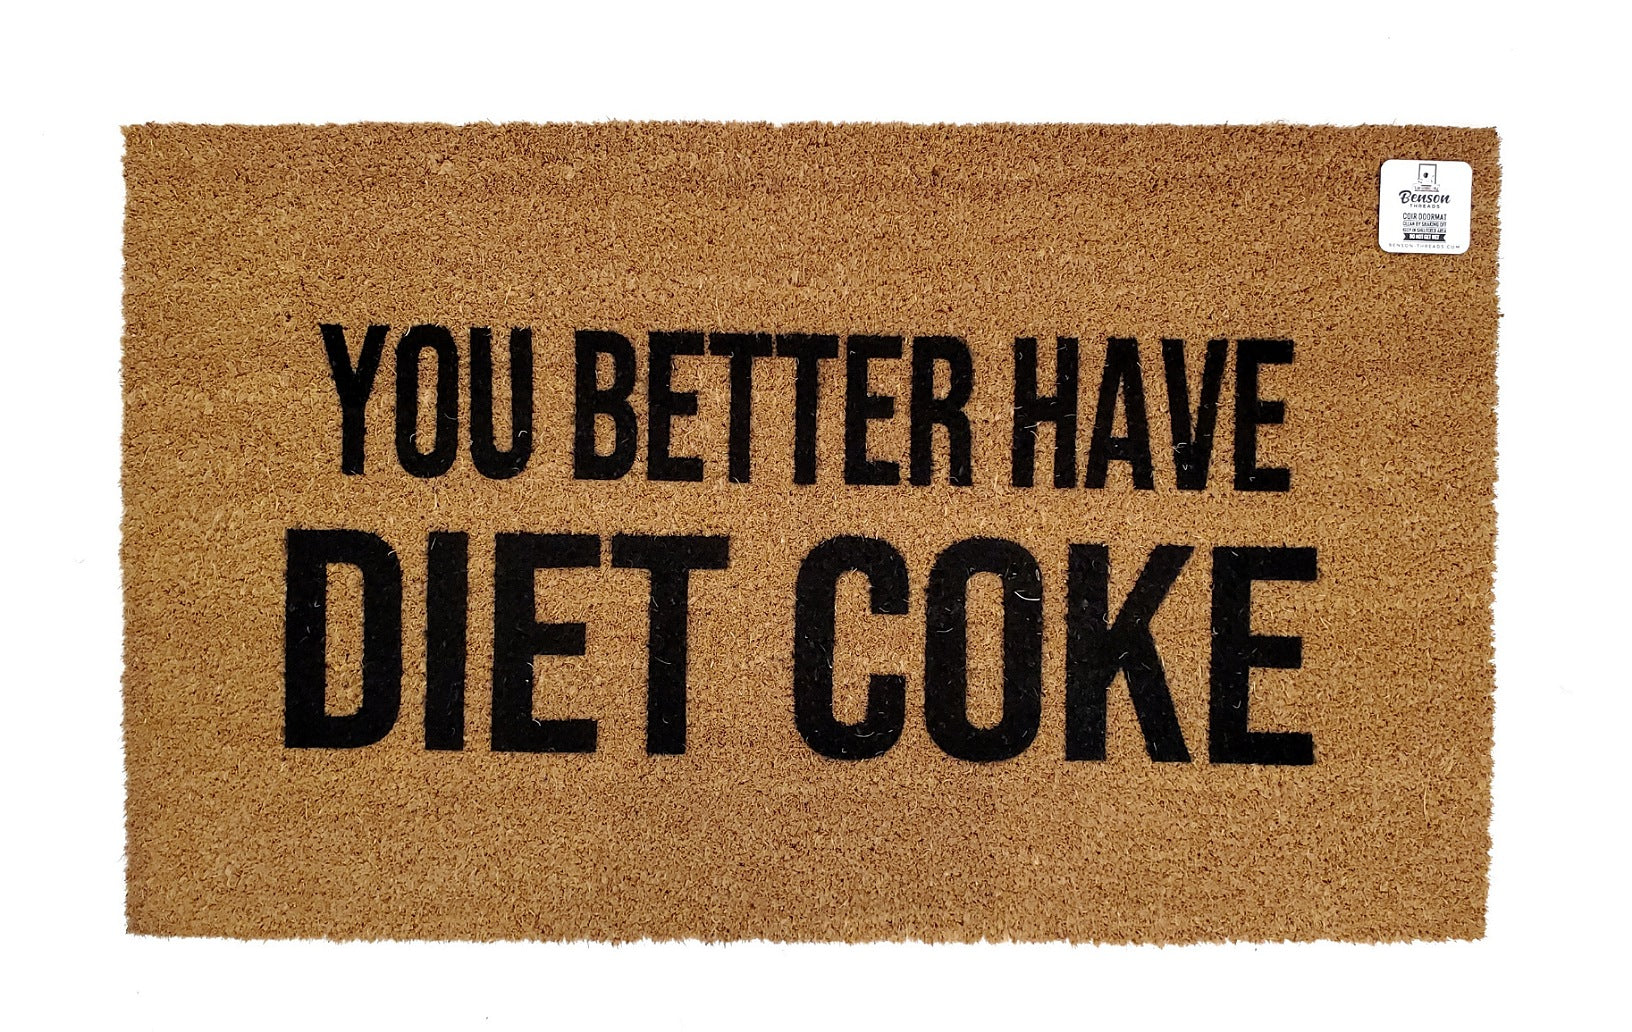 Funny Diet Coke Doormat, Funny Welcome Mats